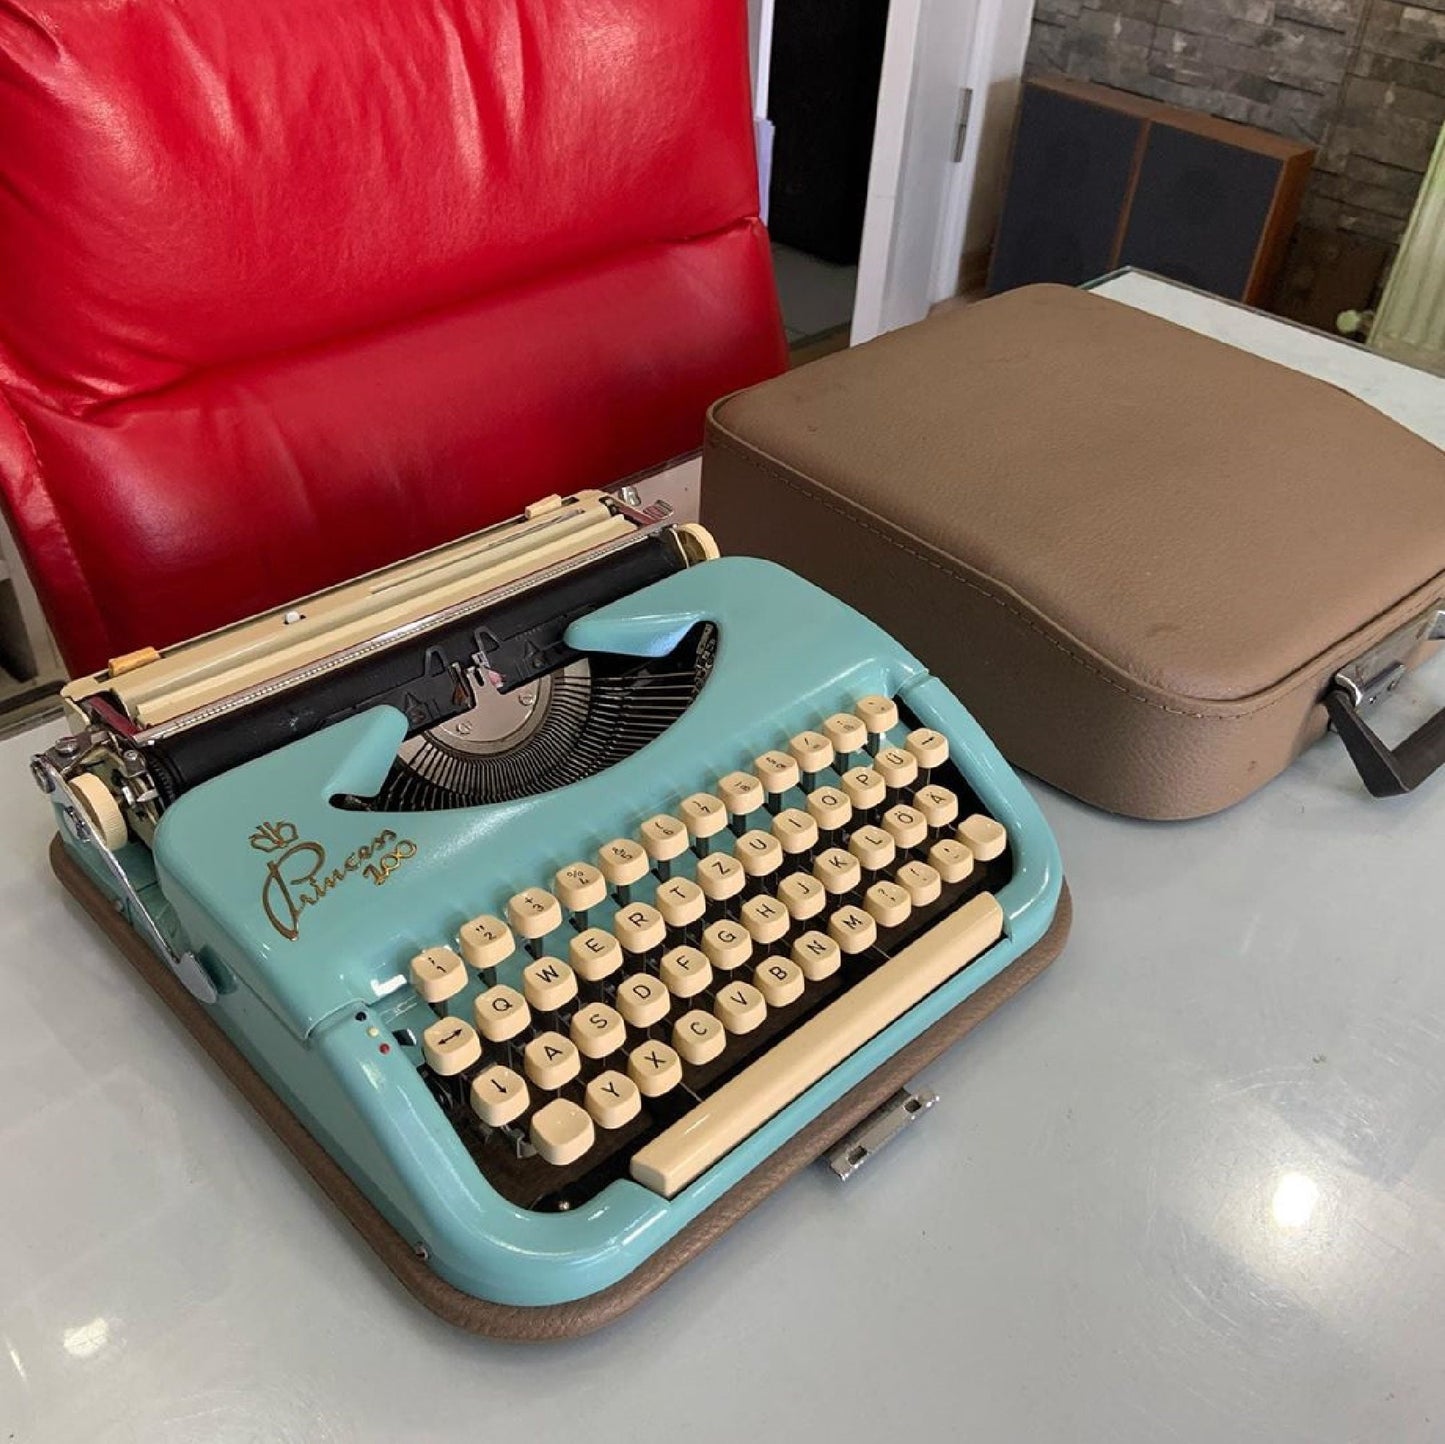 Princess 100 Typewriter - Working Typewriter, Blue Elegance, Beige Case